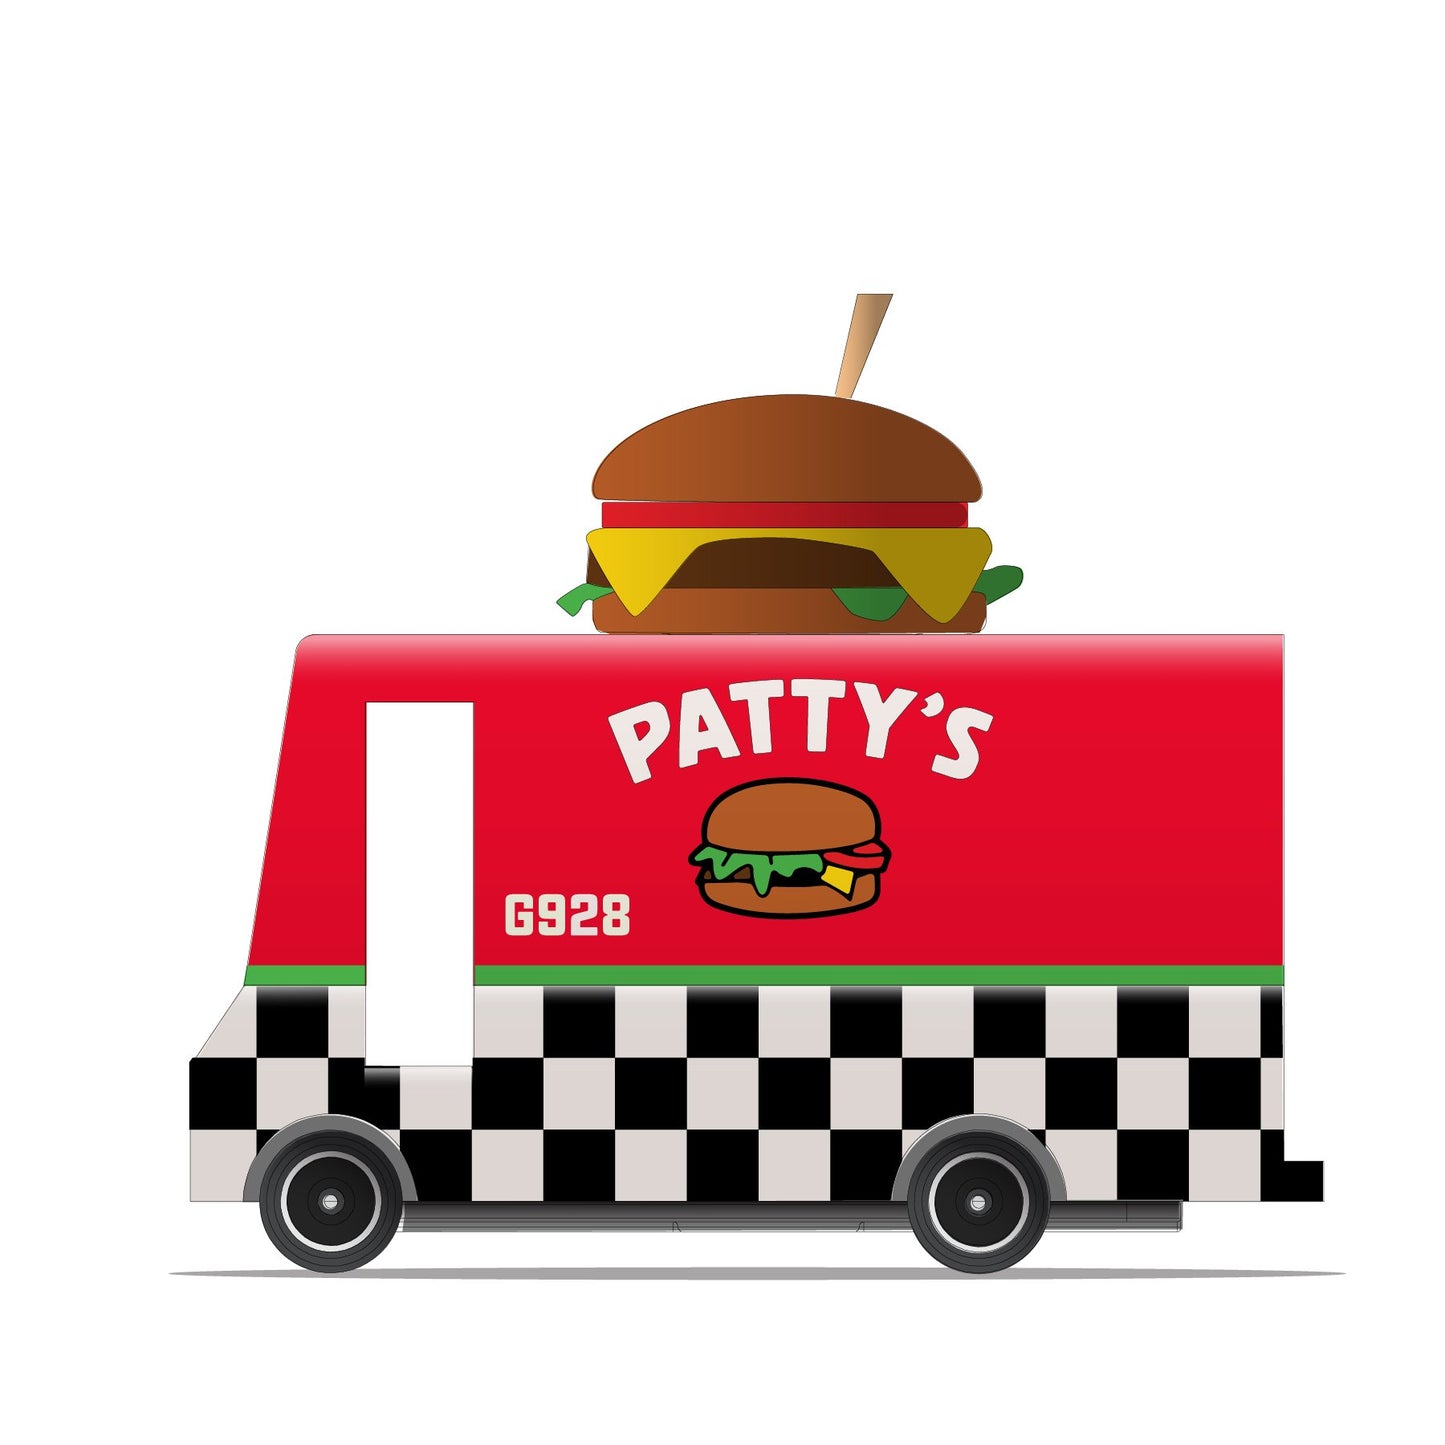 Patty's hamburger wagen